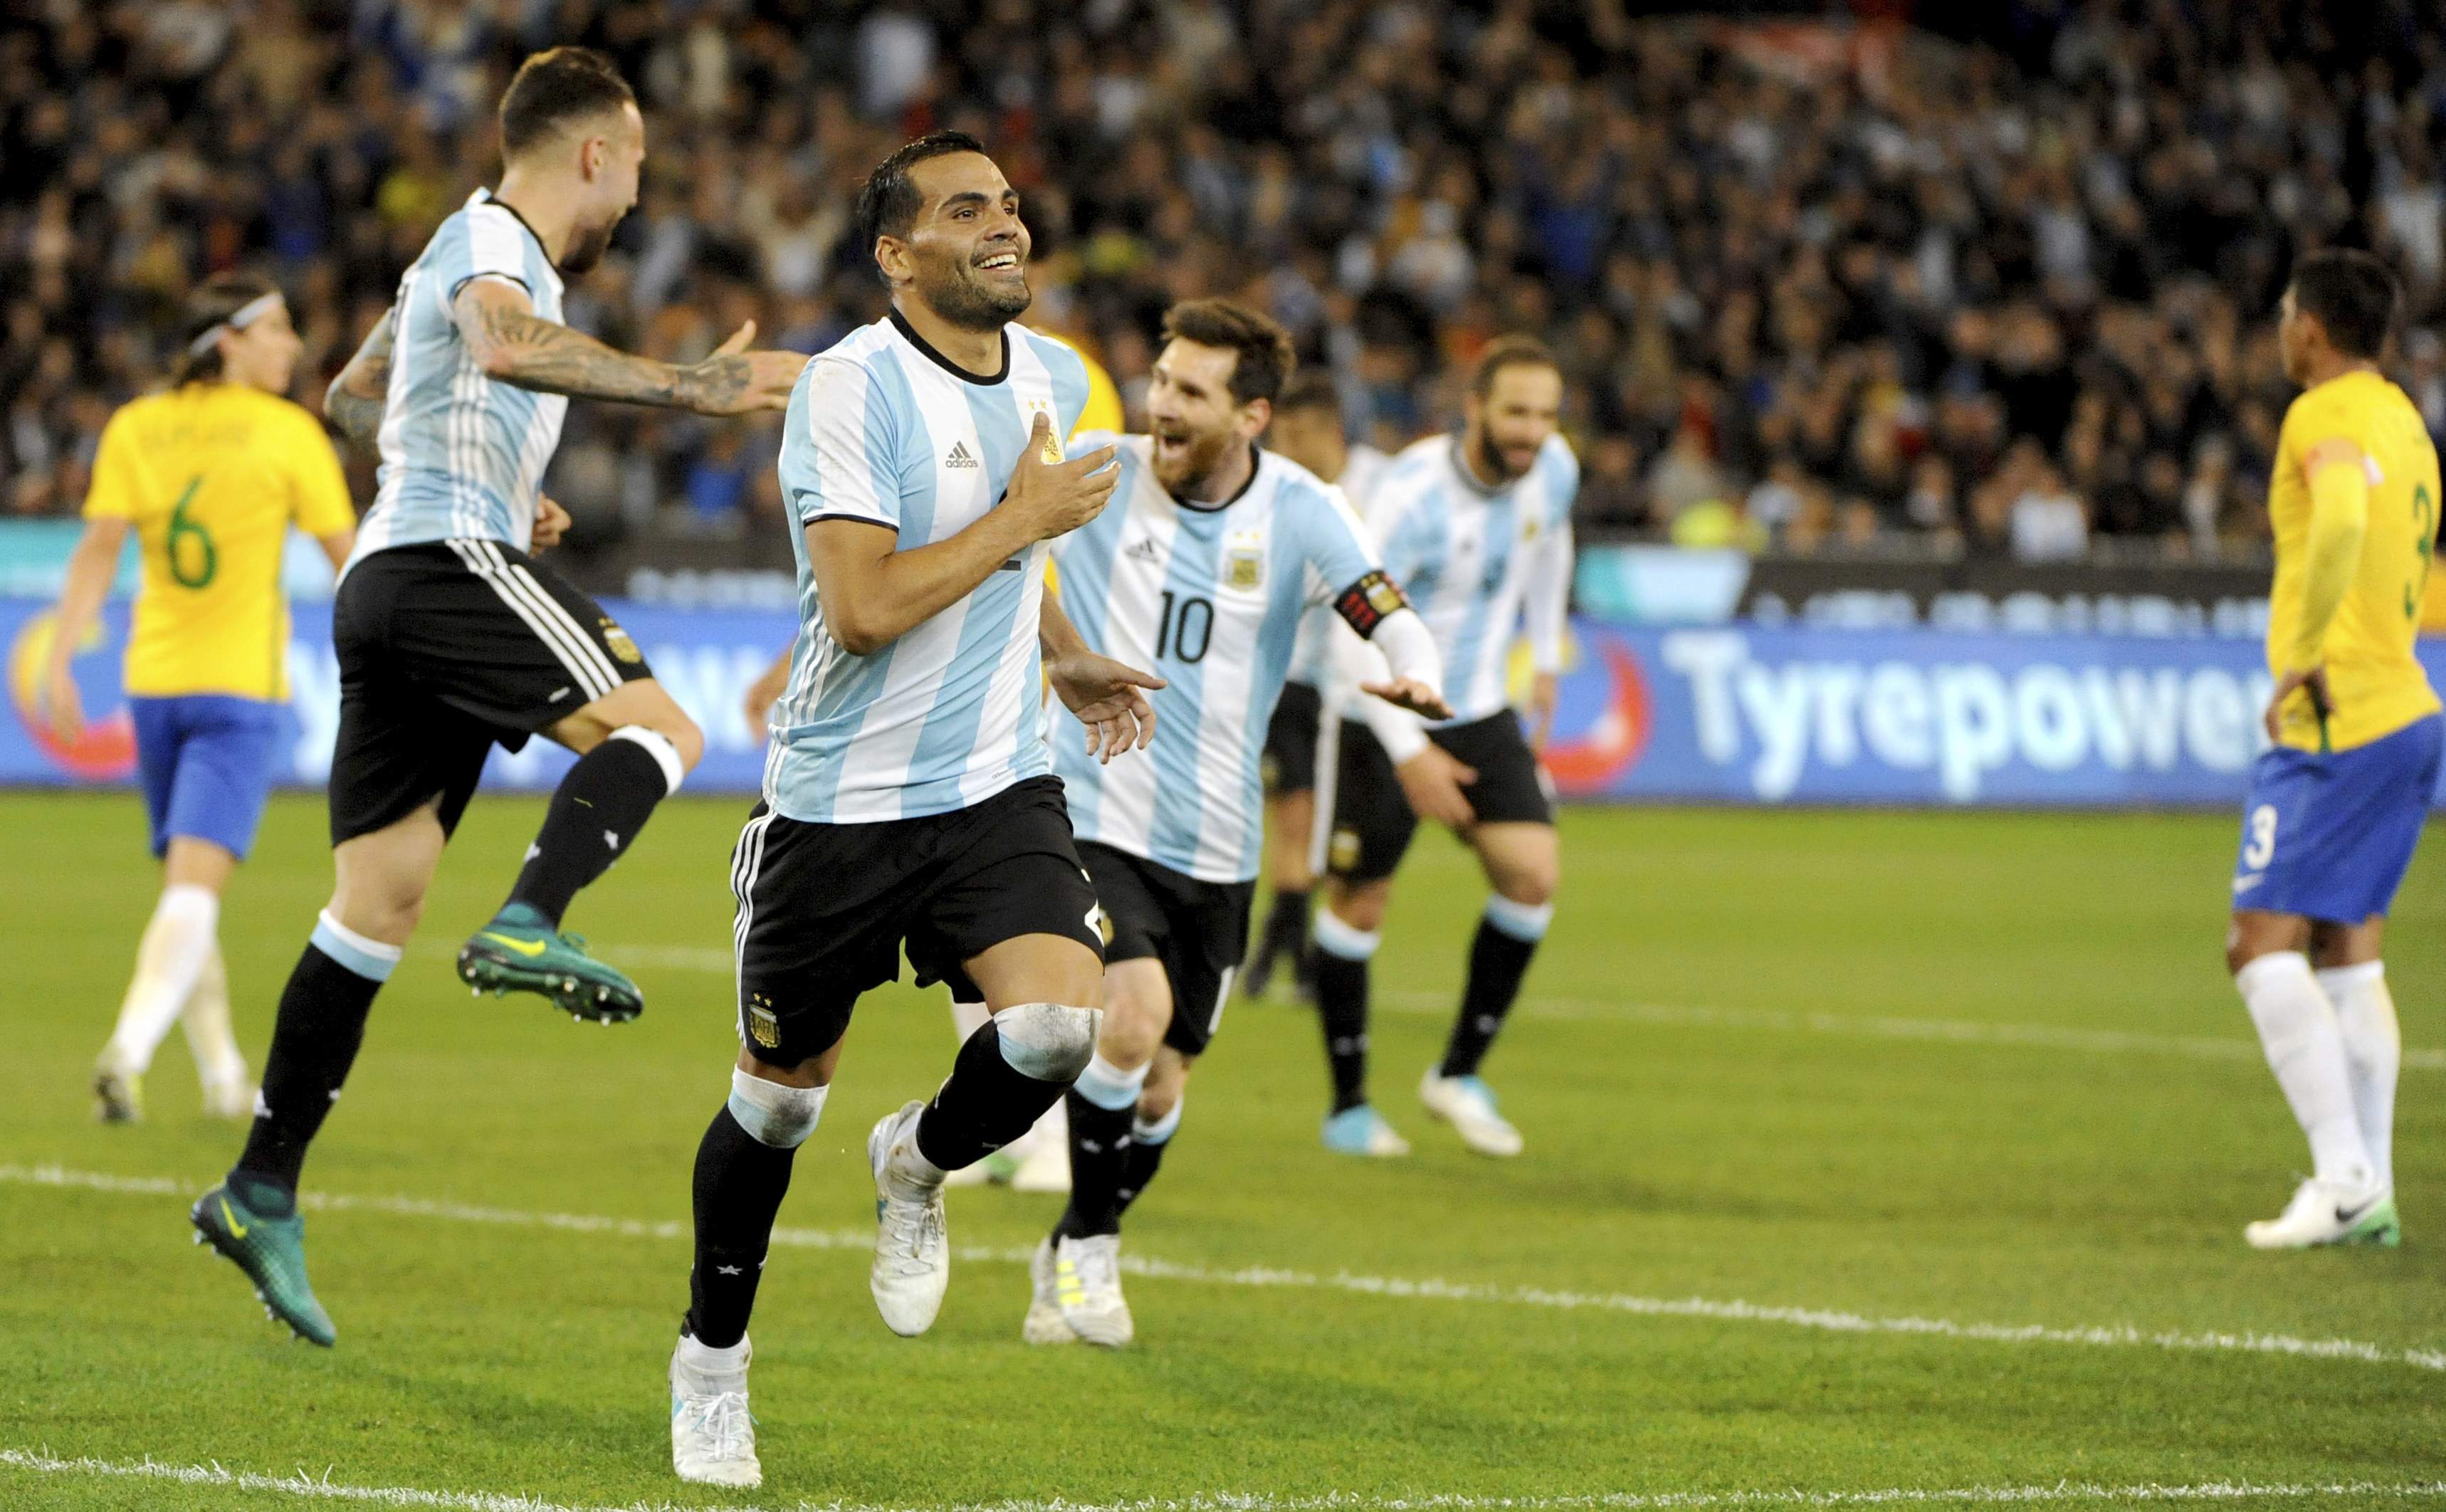 Mercado goal for Argentina 